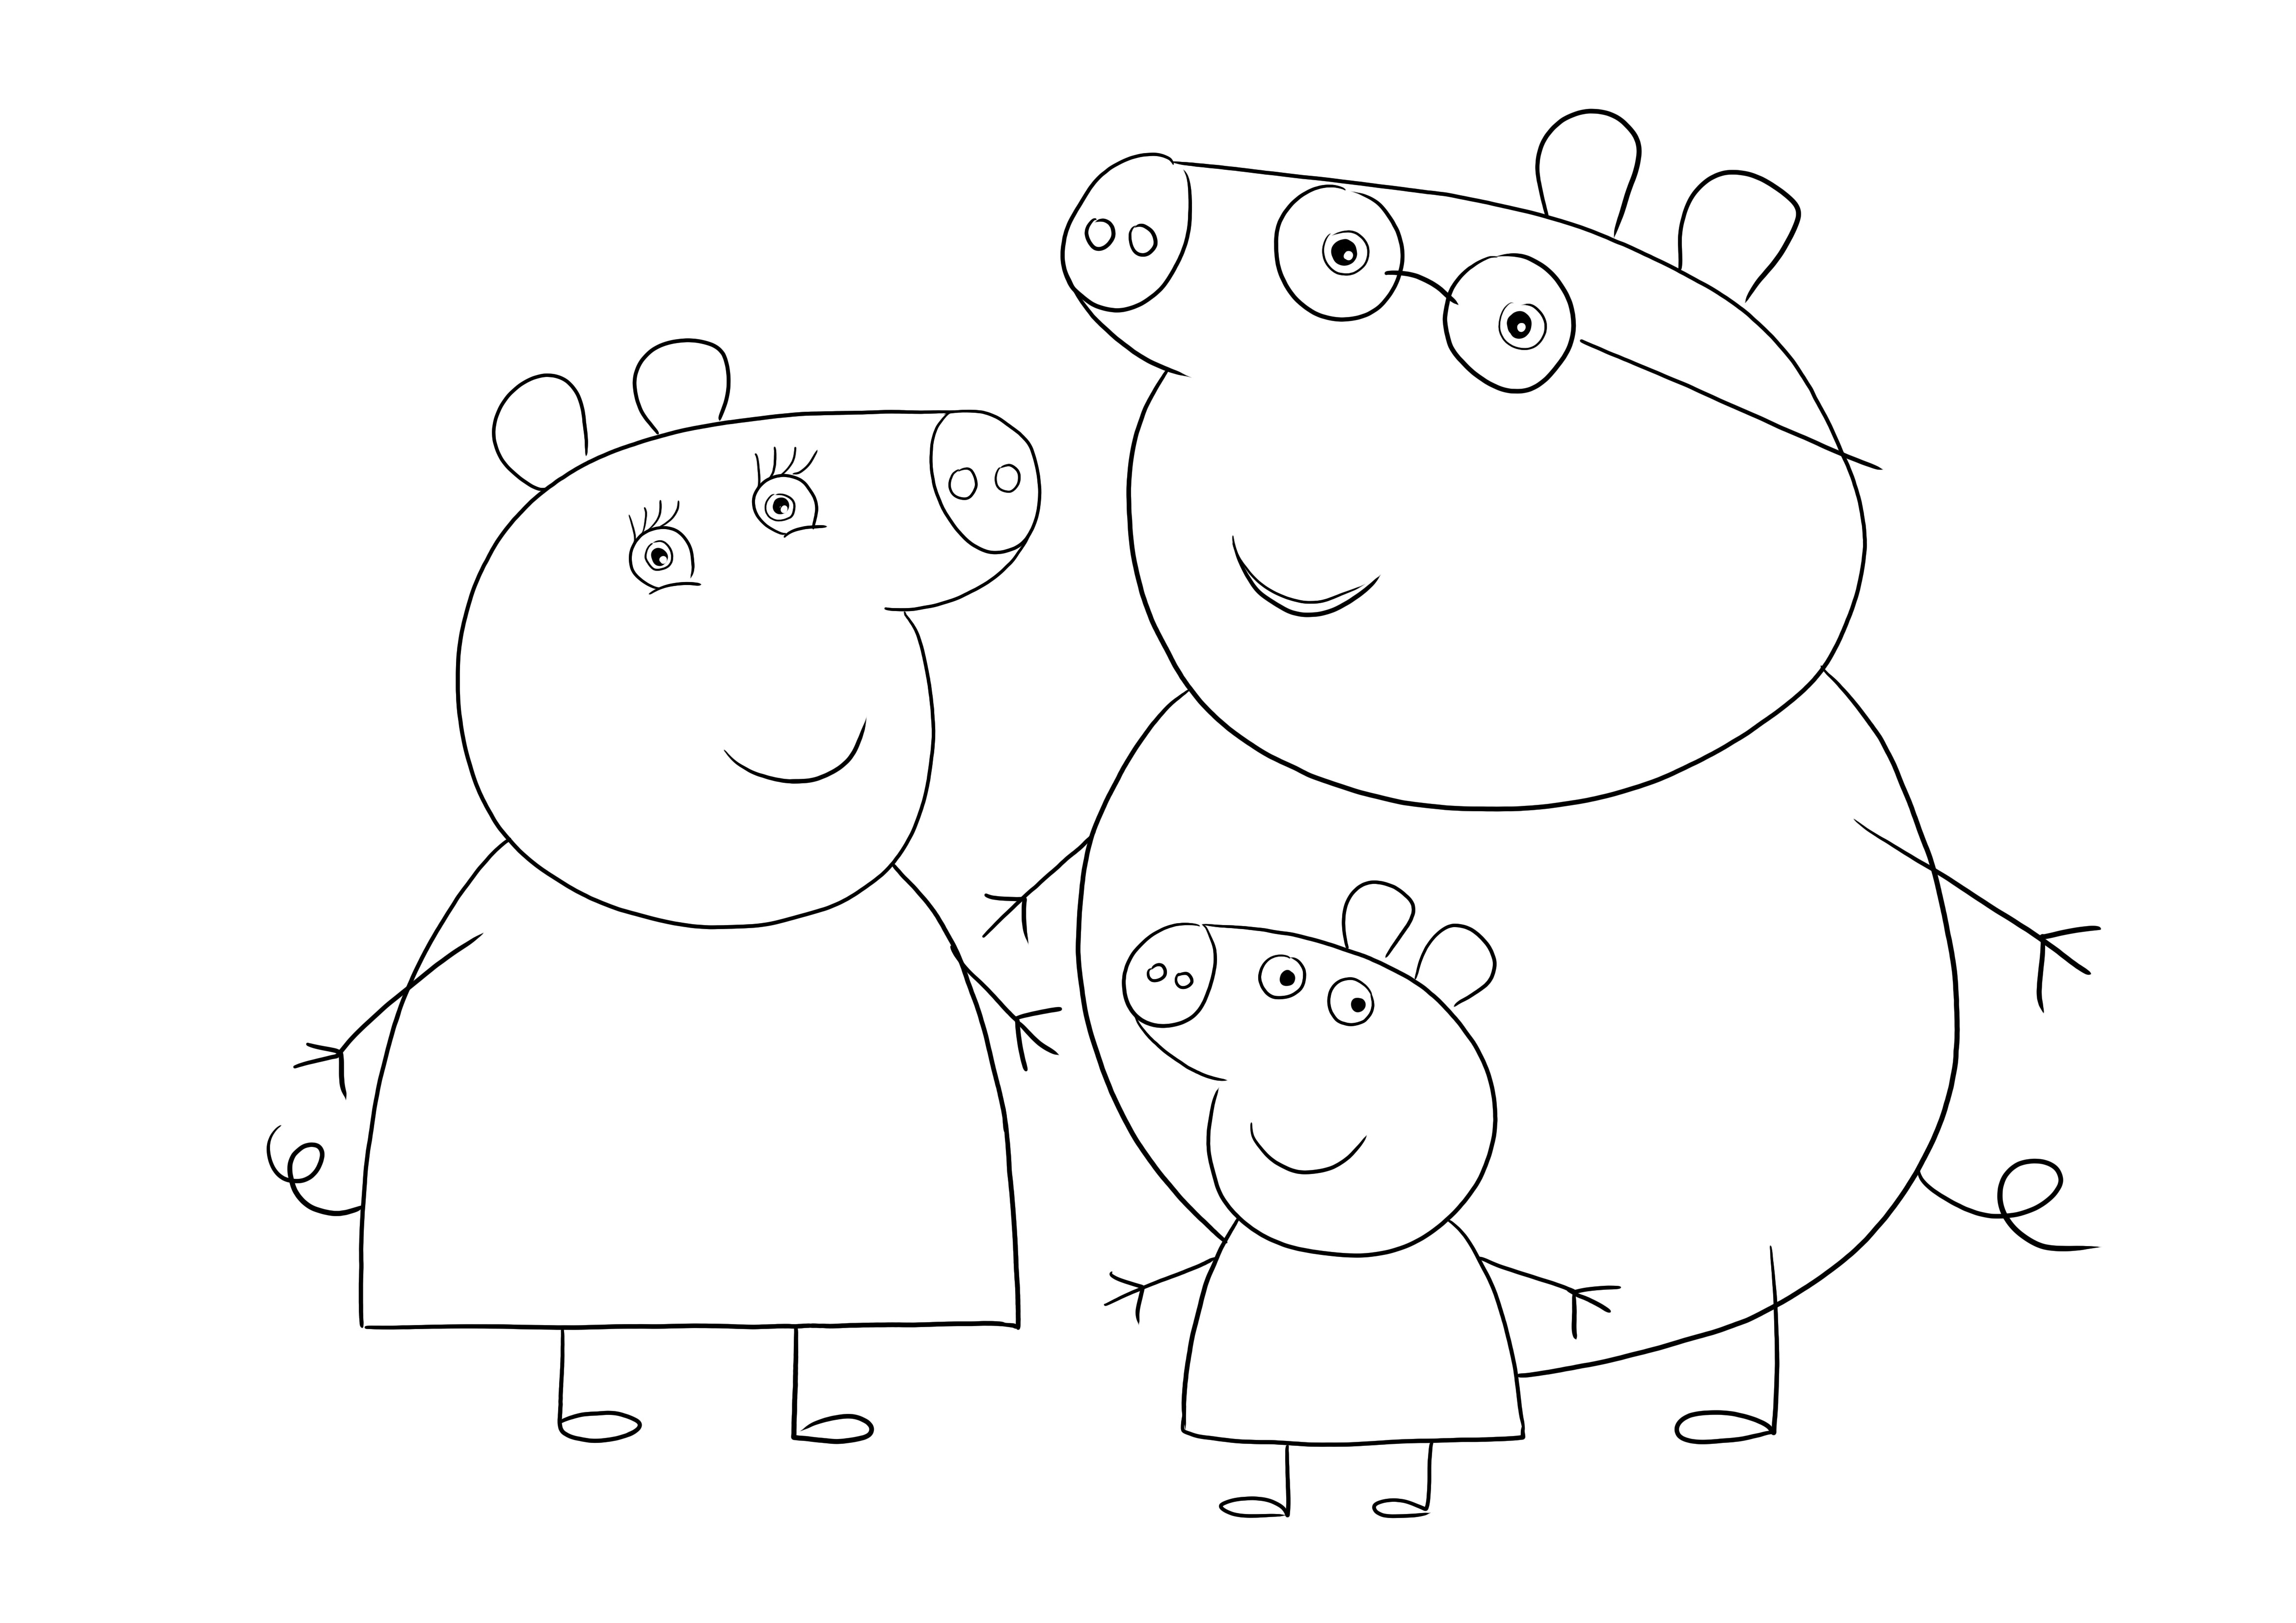 Papa-Mama-Peppa varken voor gratis kleuren en downloaden voor kinderen kleurplaat